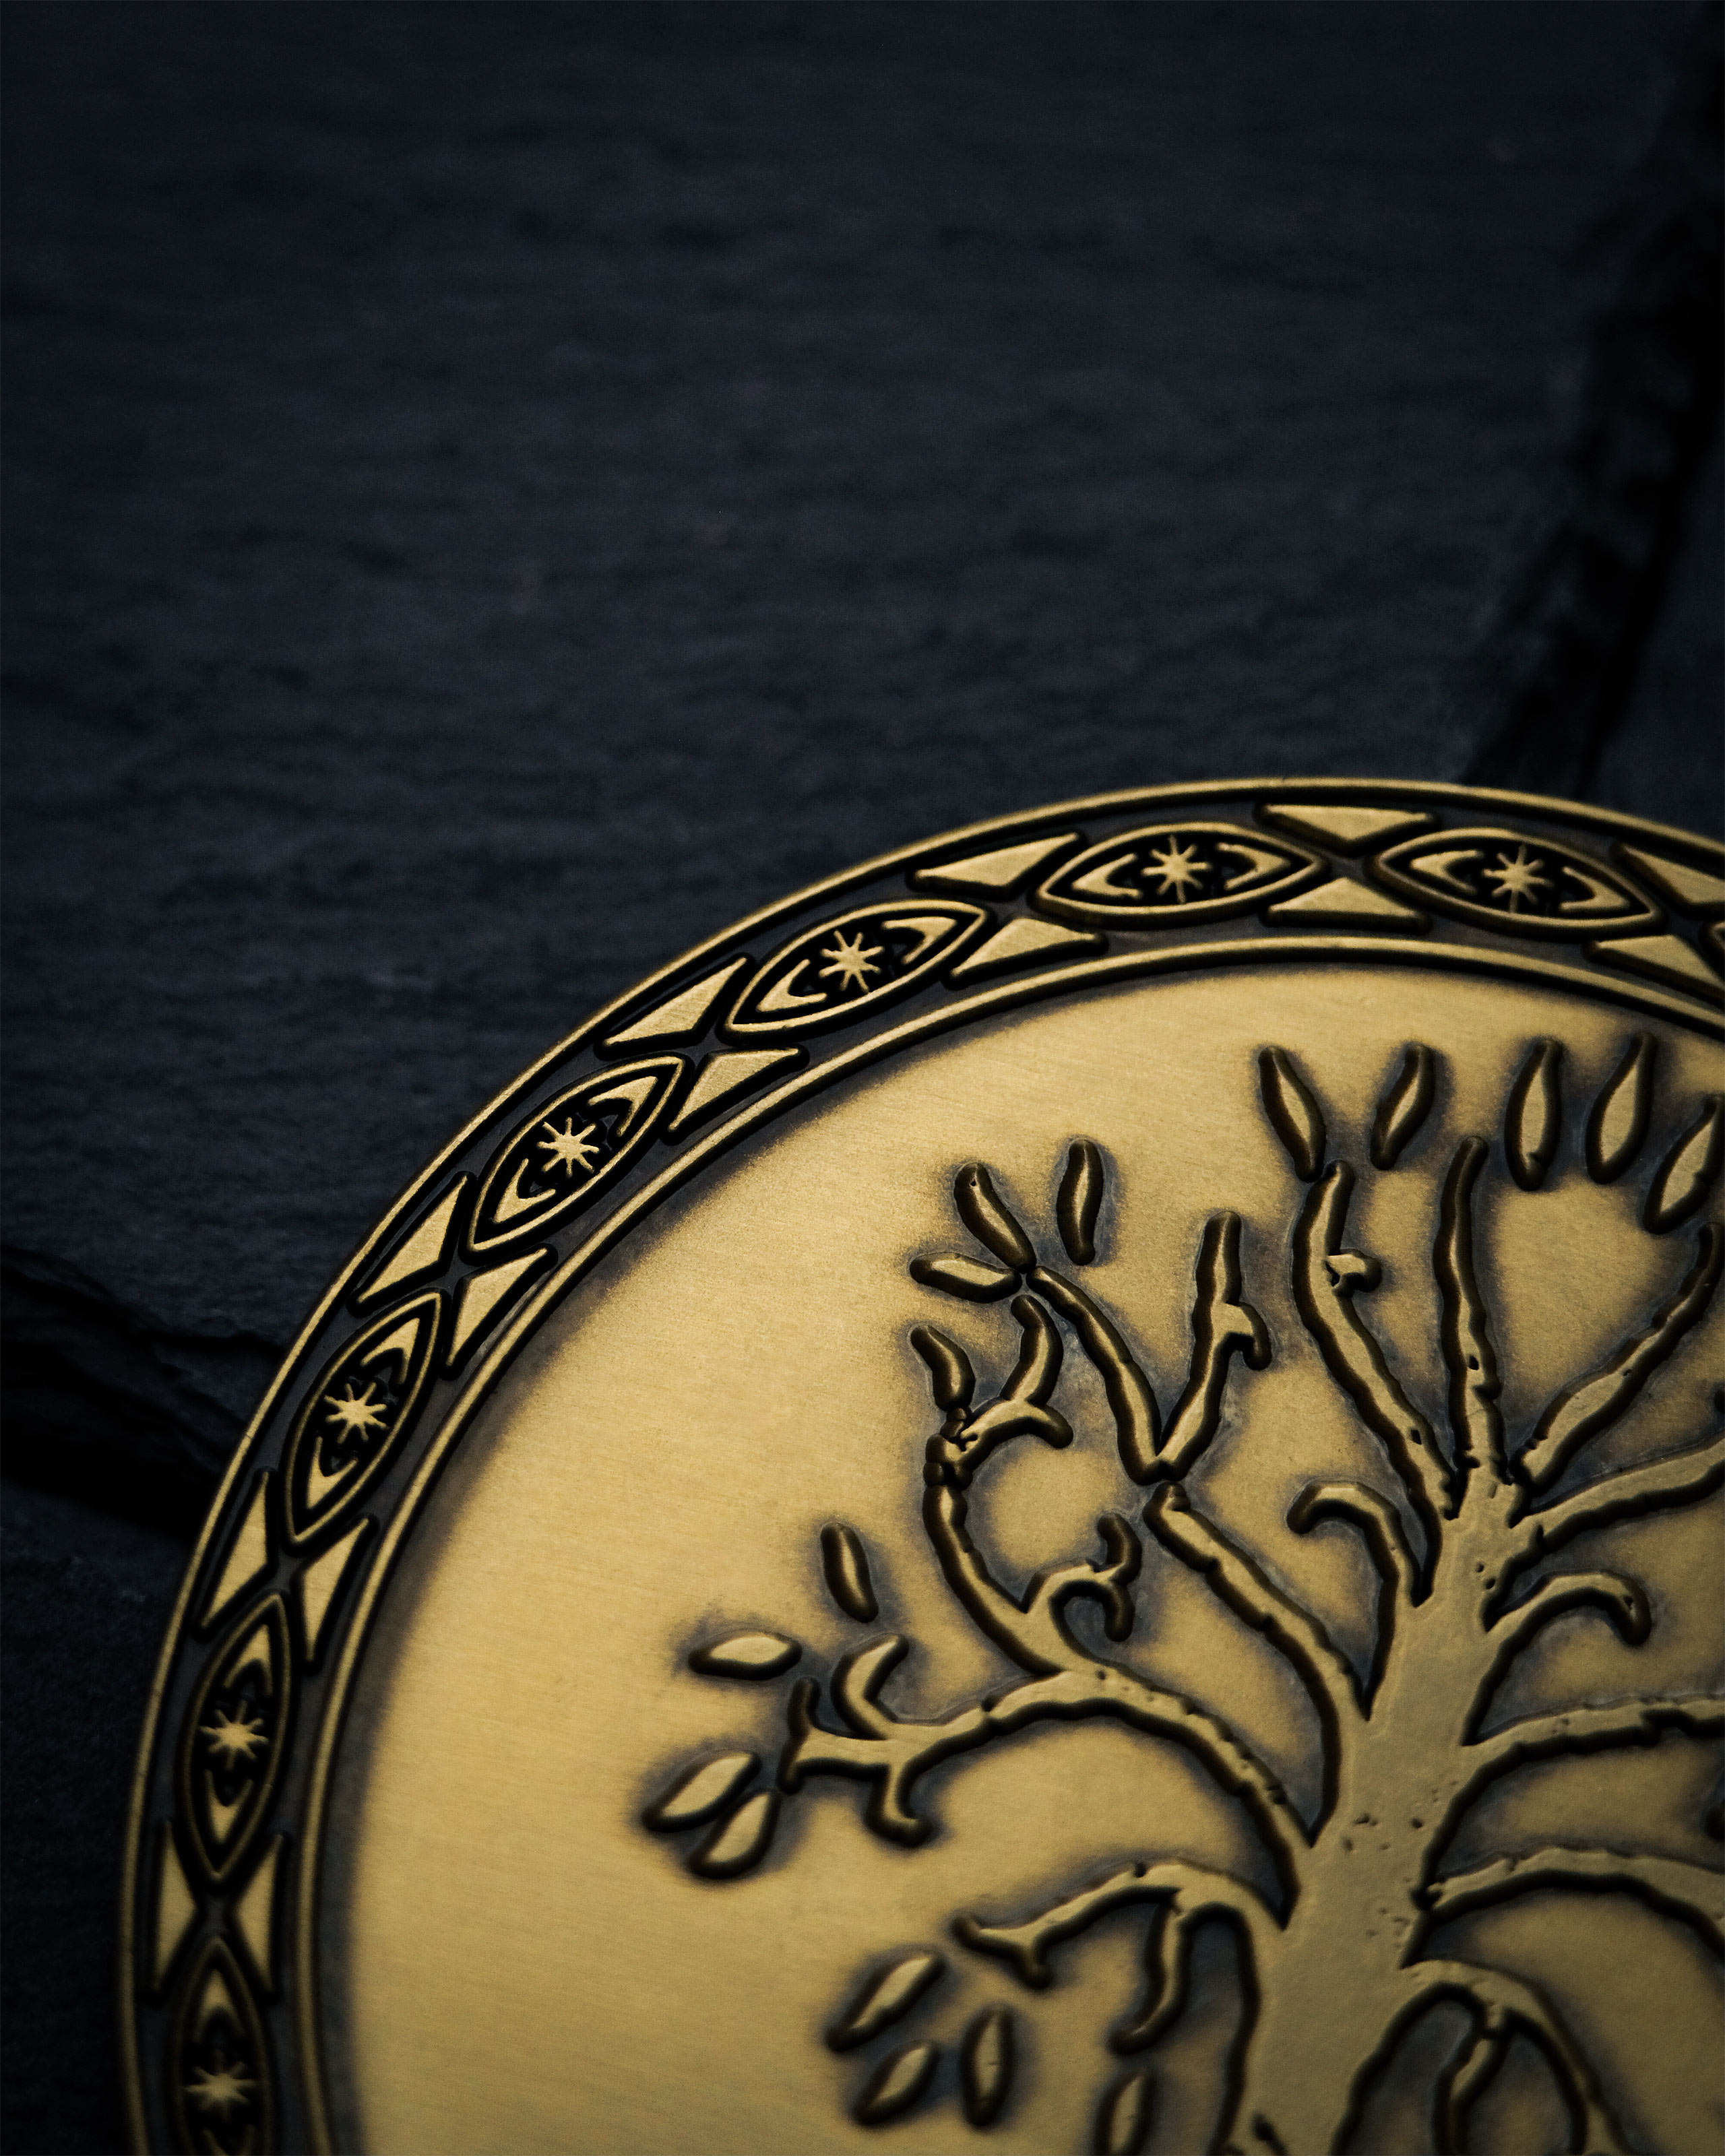 Herr der Ringe - Gondor Sammlermünze